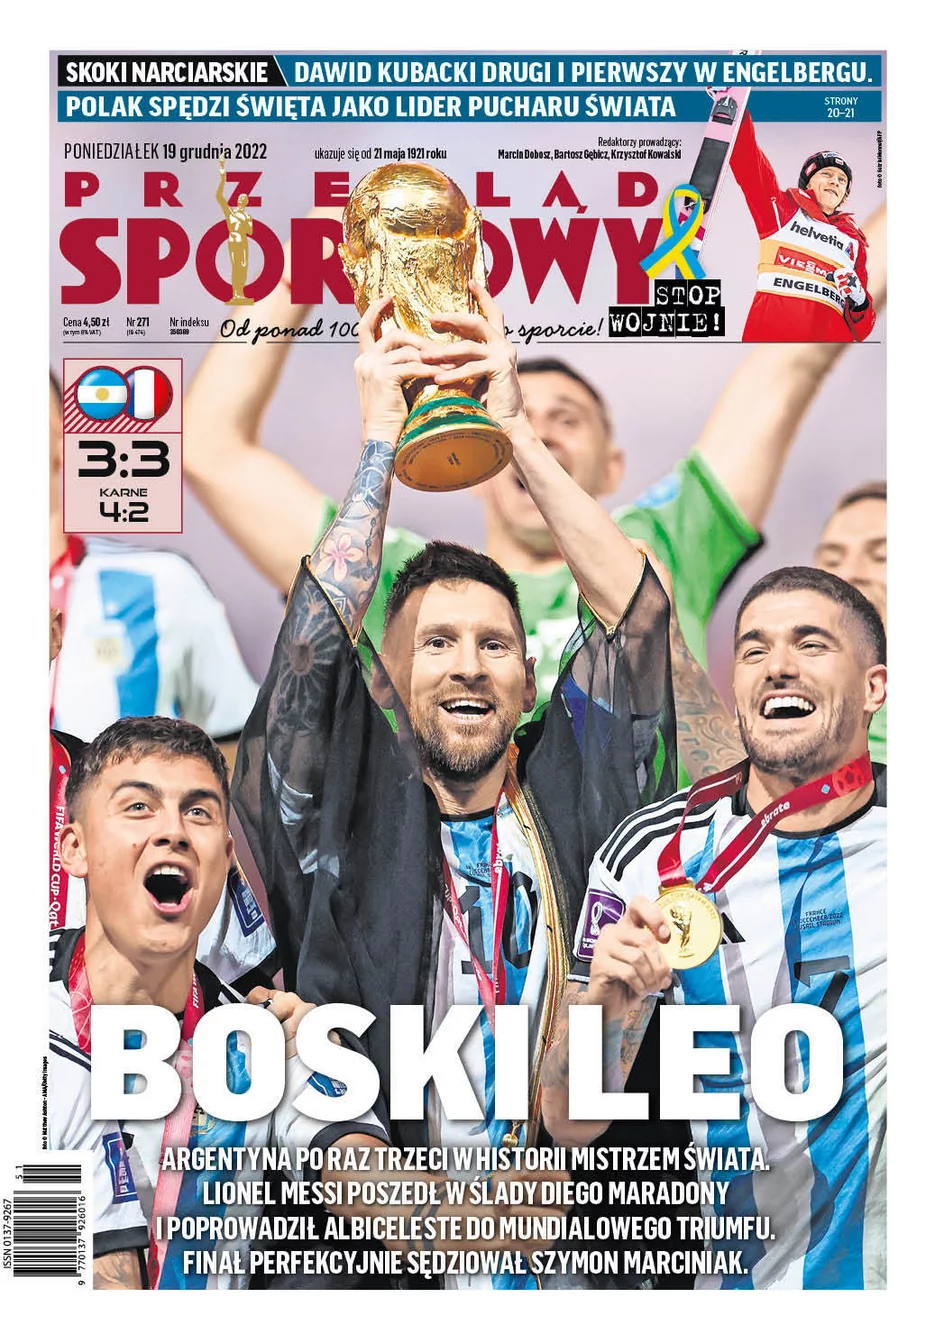 “Maradoha”. Messi skradł okładki światowych gazet!